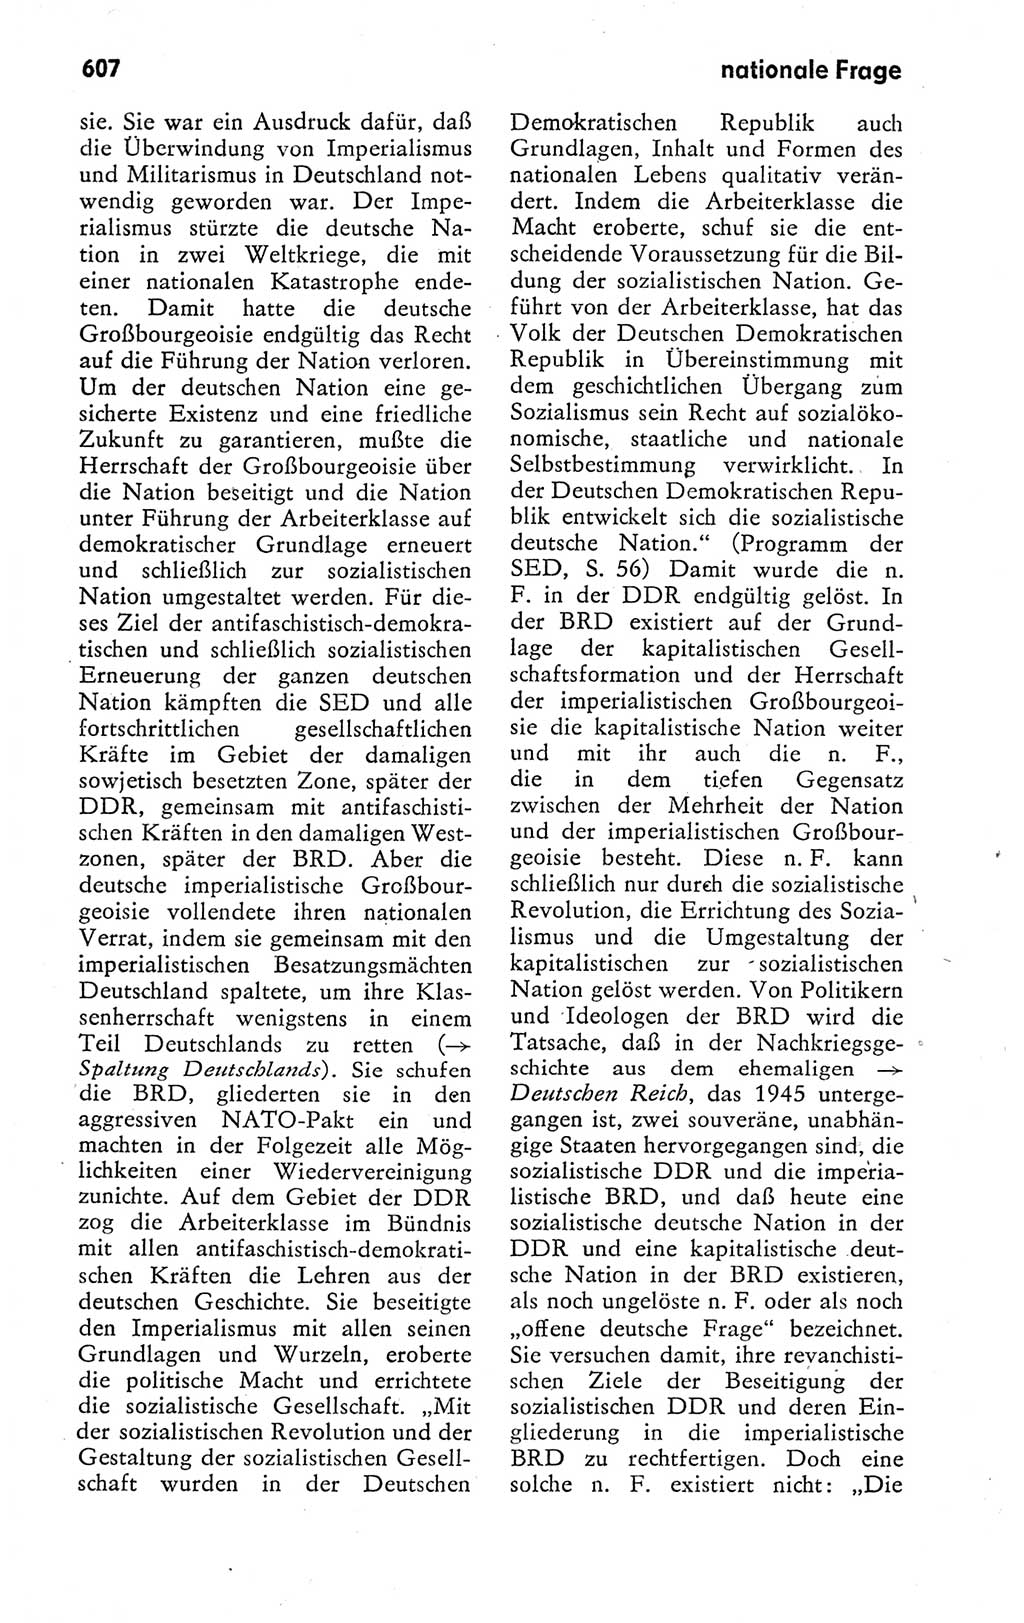 Kleines politisches Wörterbuch [Deutsche Demokratische Republik (DDR)] 1978, Seite 607 (Kl. pol. Wb. DDR 1978, S. 607)